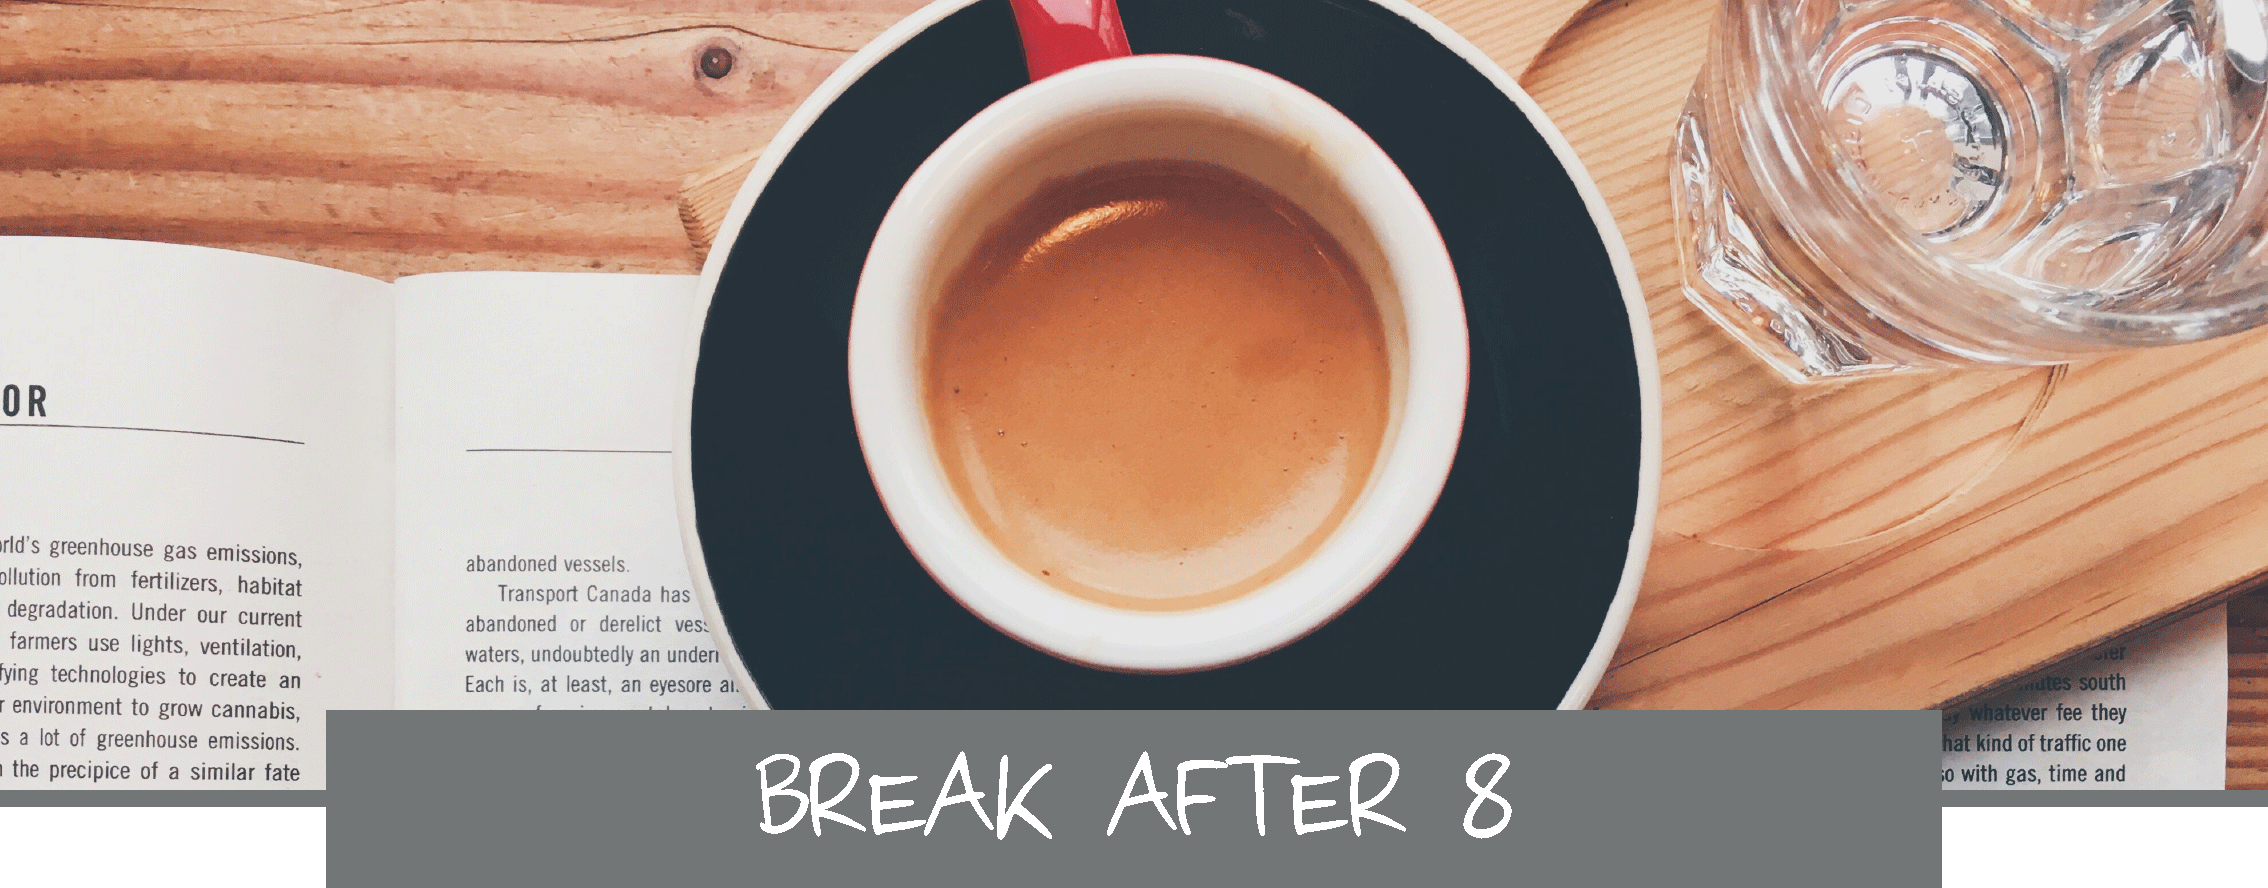 breakt-after-8_teil1